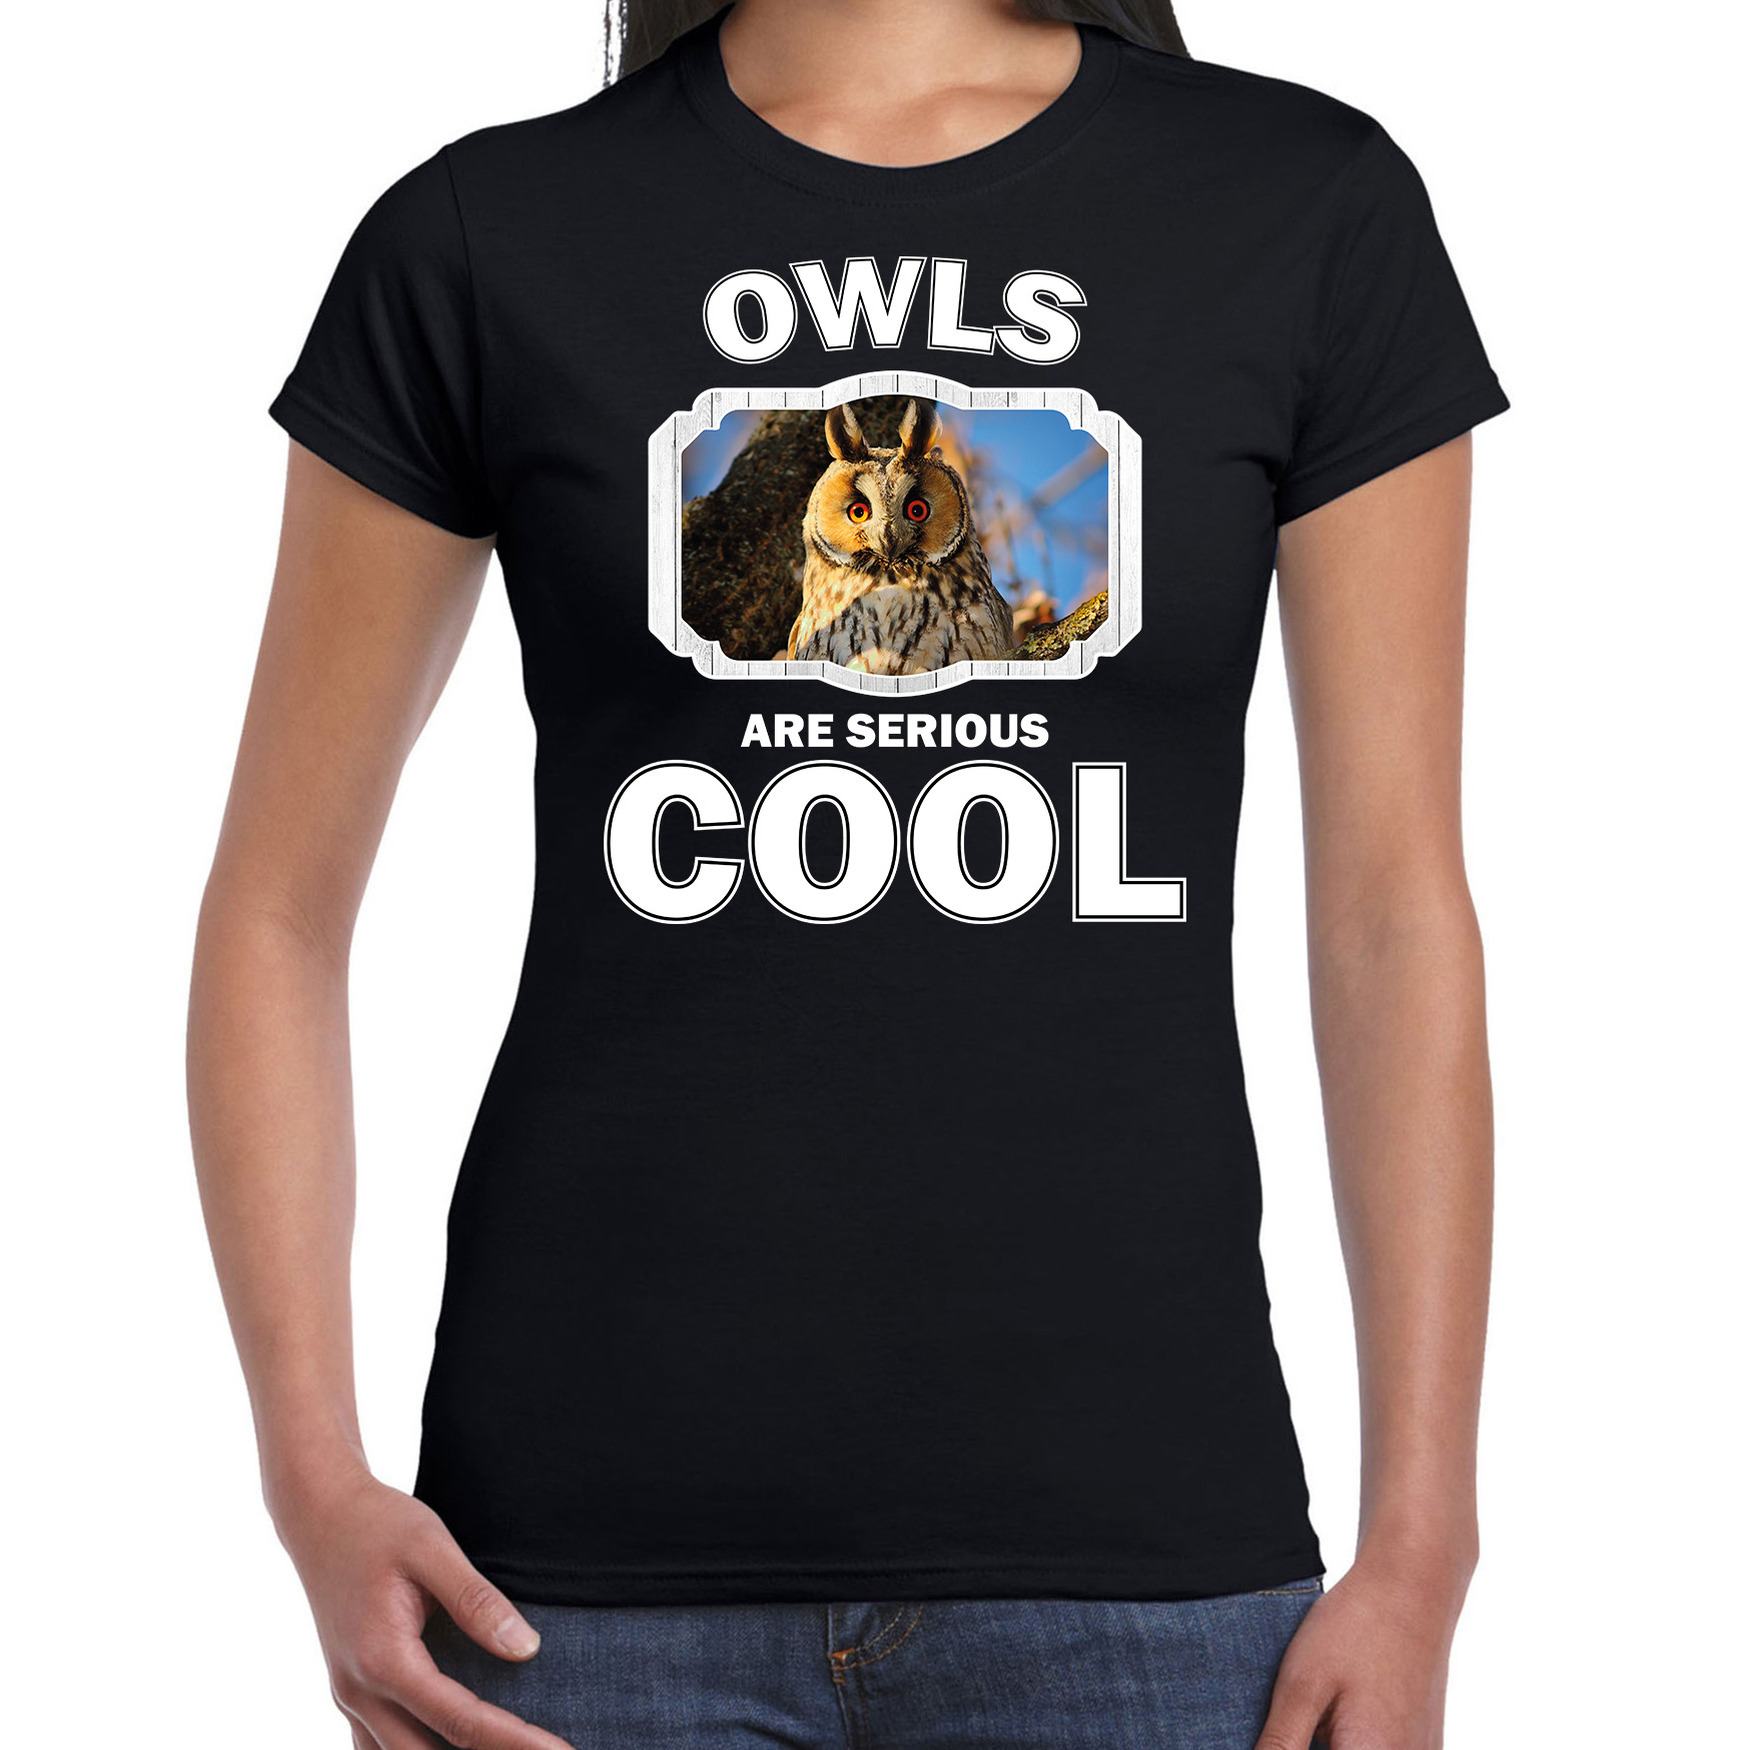 Dieren ransuil t-shirt zwart dames owls are cool shirt